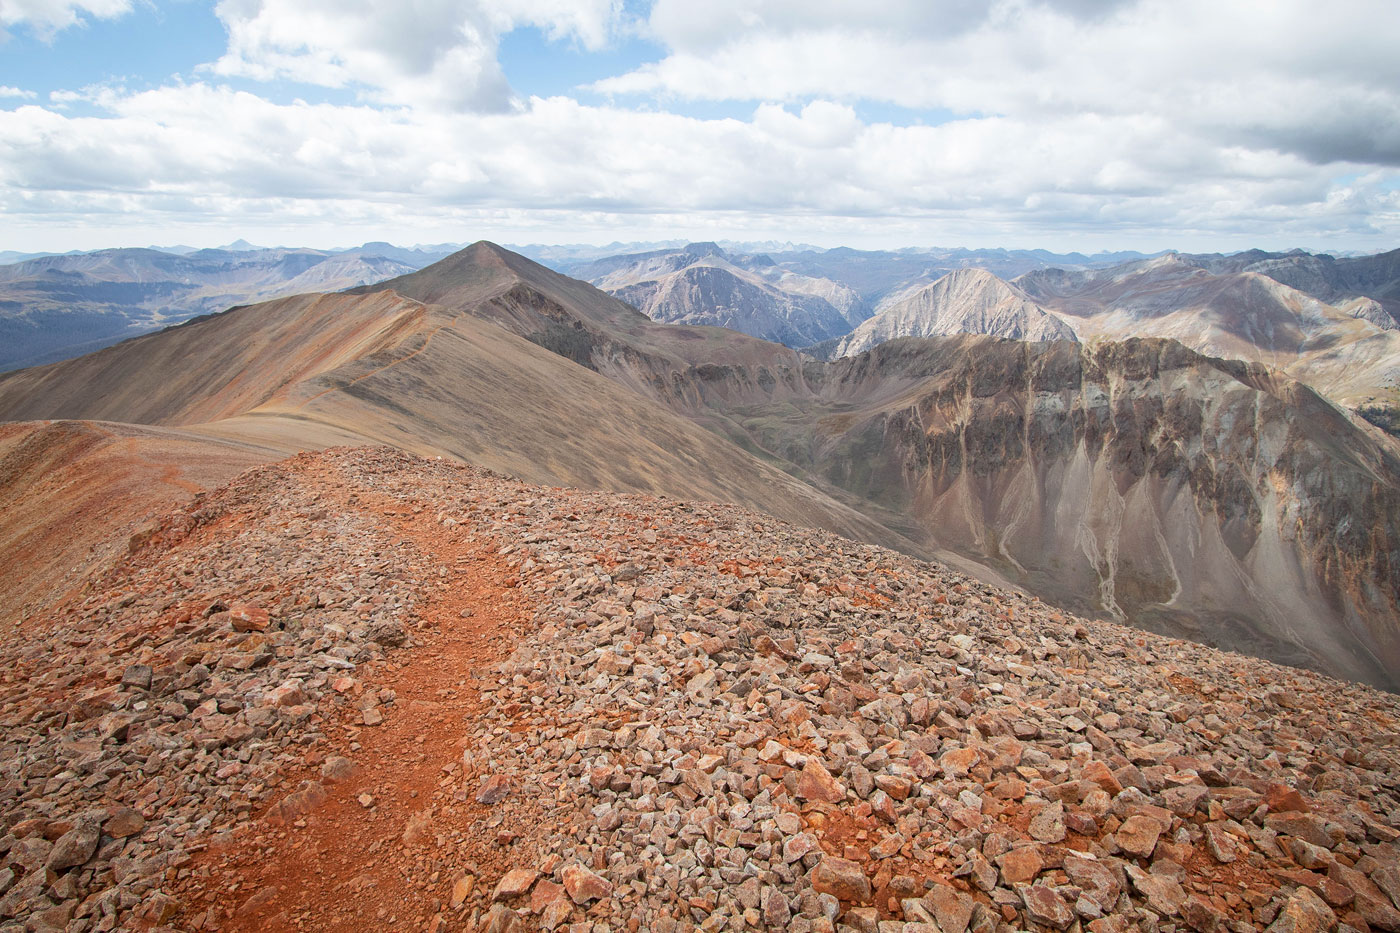 Hike Redcloud Peak, Sunshine Peak, Sundog in Redcloud Peak Wilderness Study Area, Colorado - Stav is Lost